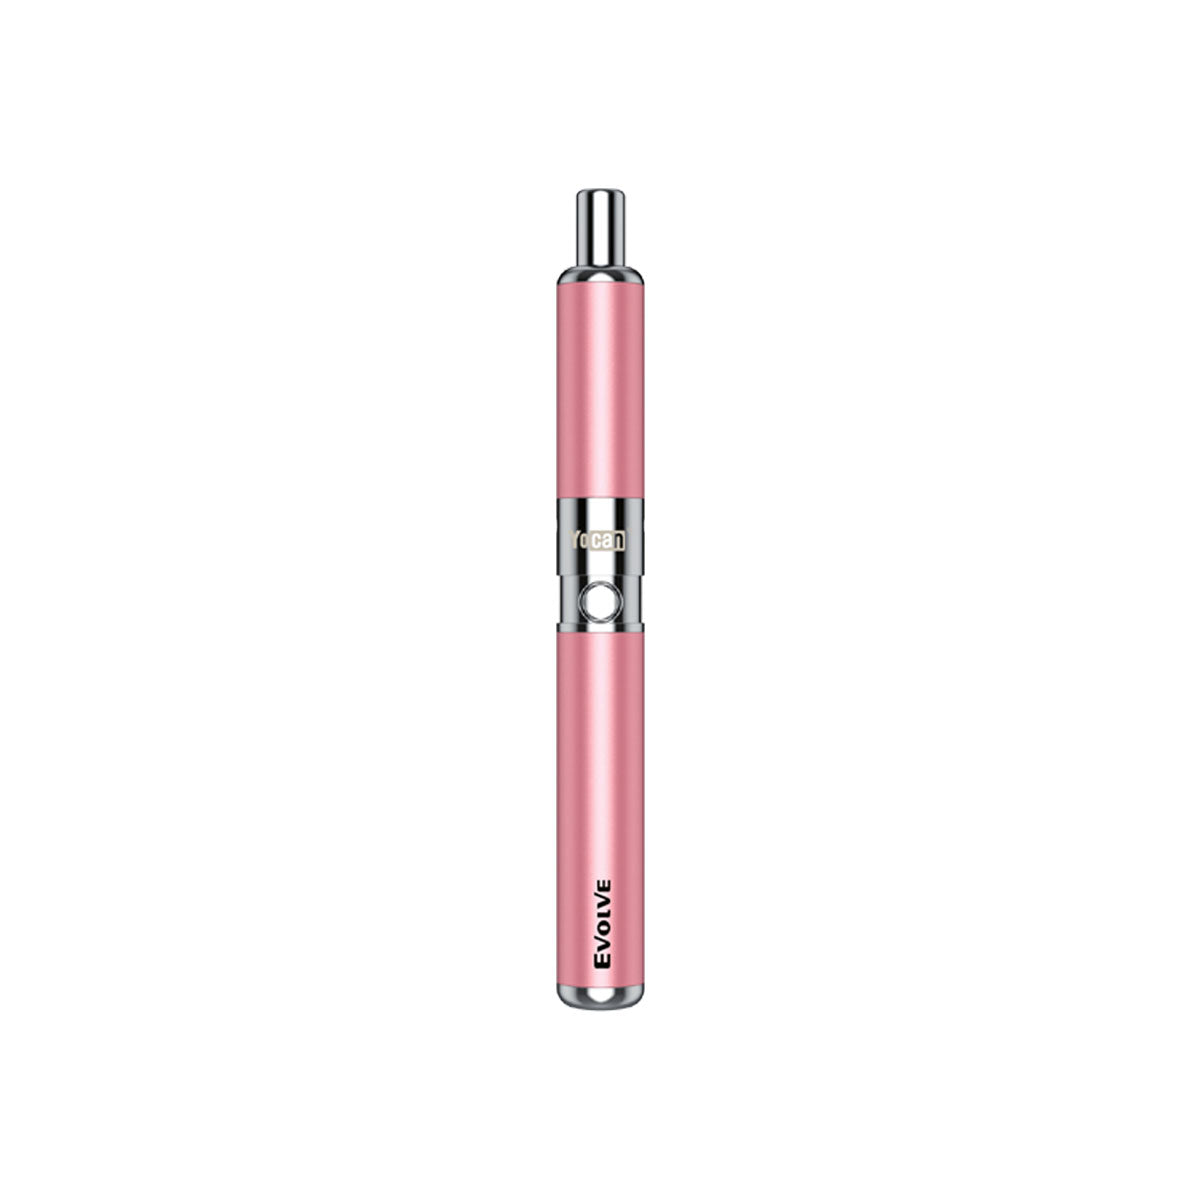 Yocan Evolve D Dry Herb Vaporizer Vaporizers Yocan Sakura Pink  